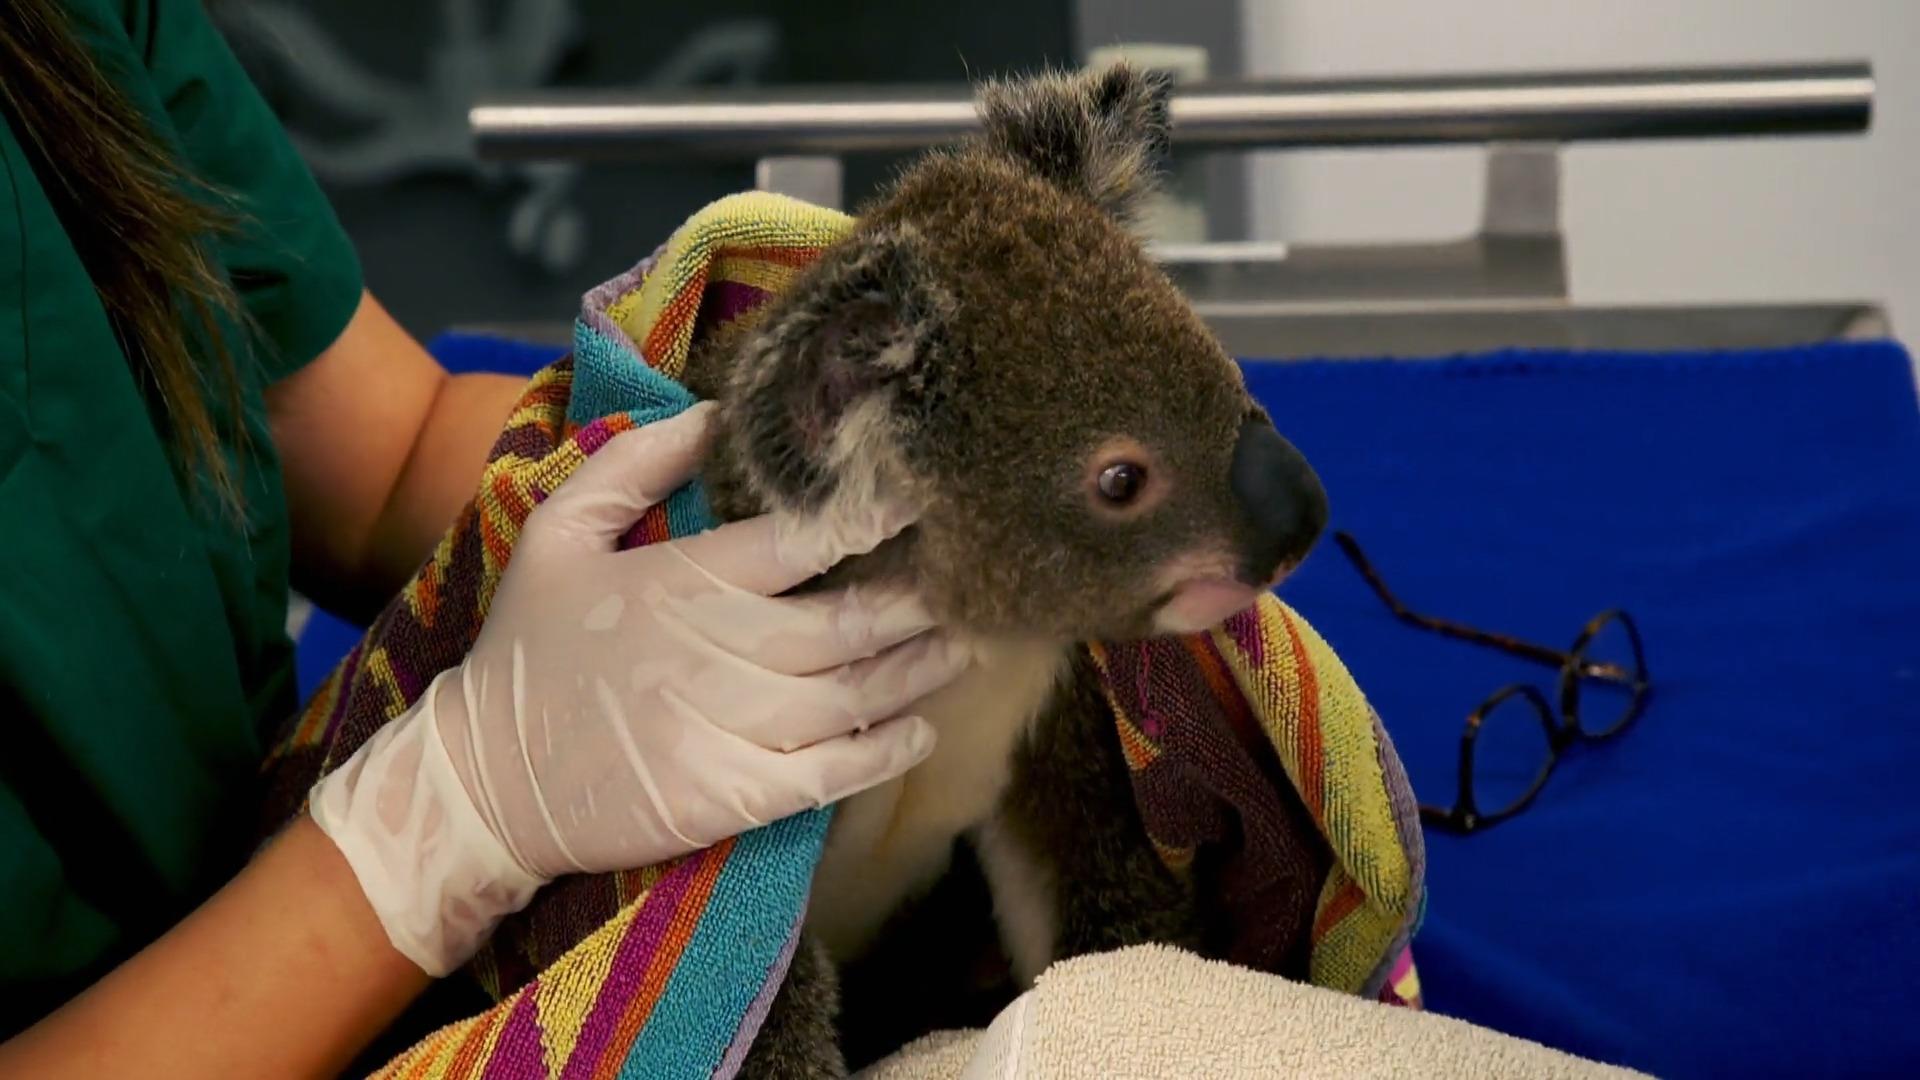 Ein Tag im berühmtesten Koala-Krankenhaus der Welt Seltene Einblicke!